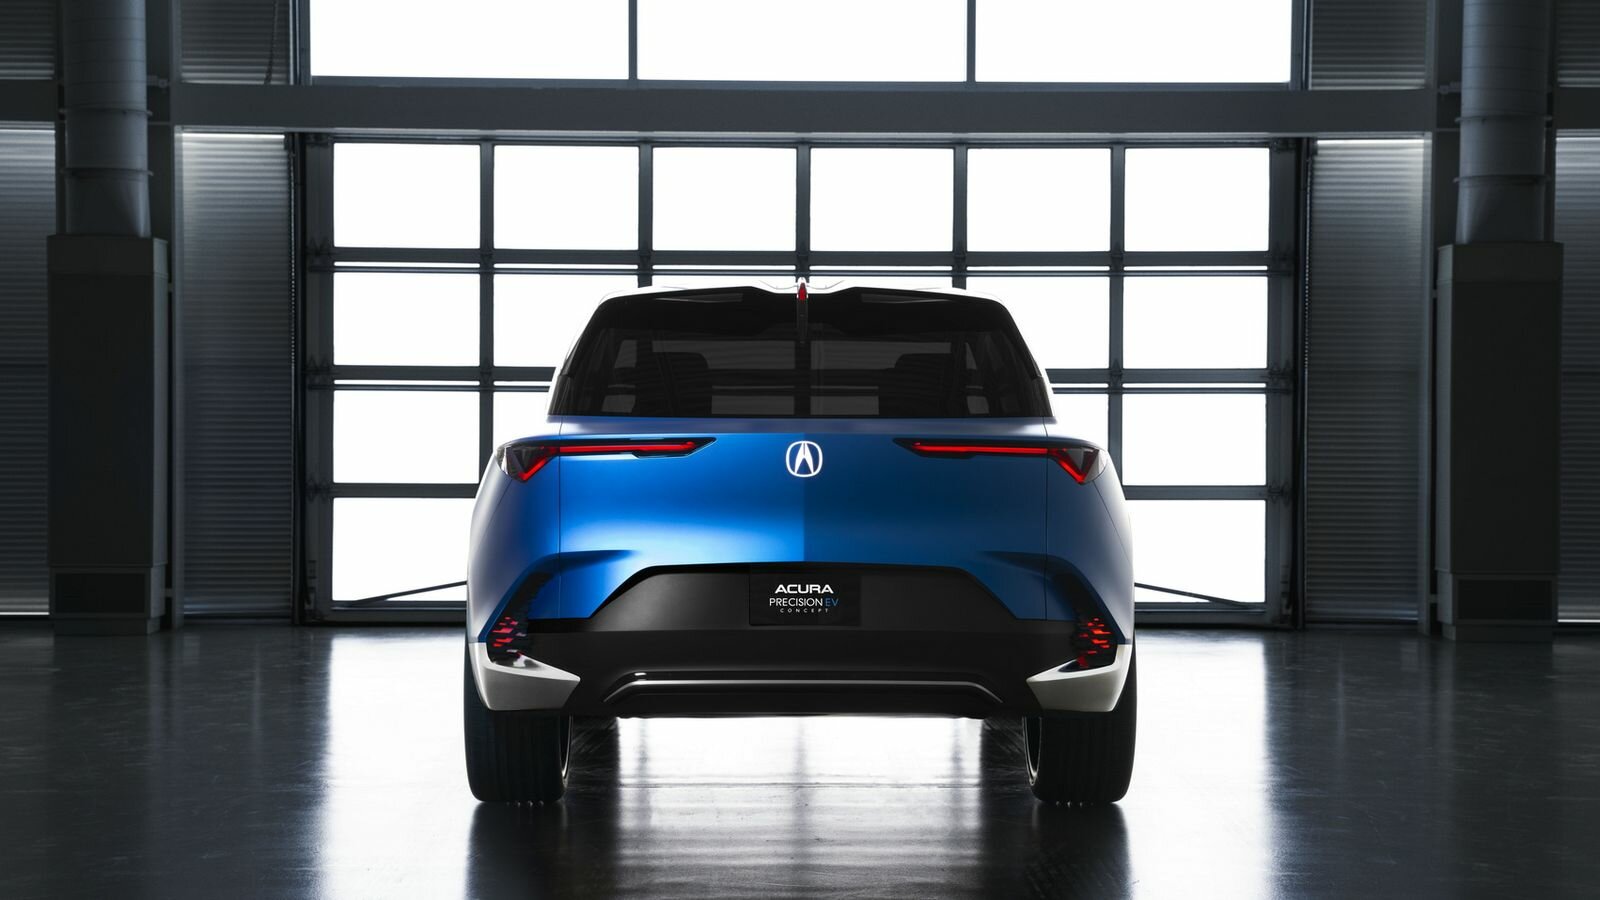 Acura представила свой новый электромобиль будущего